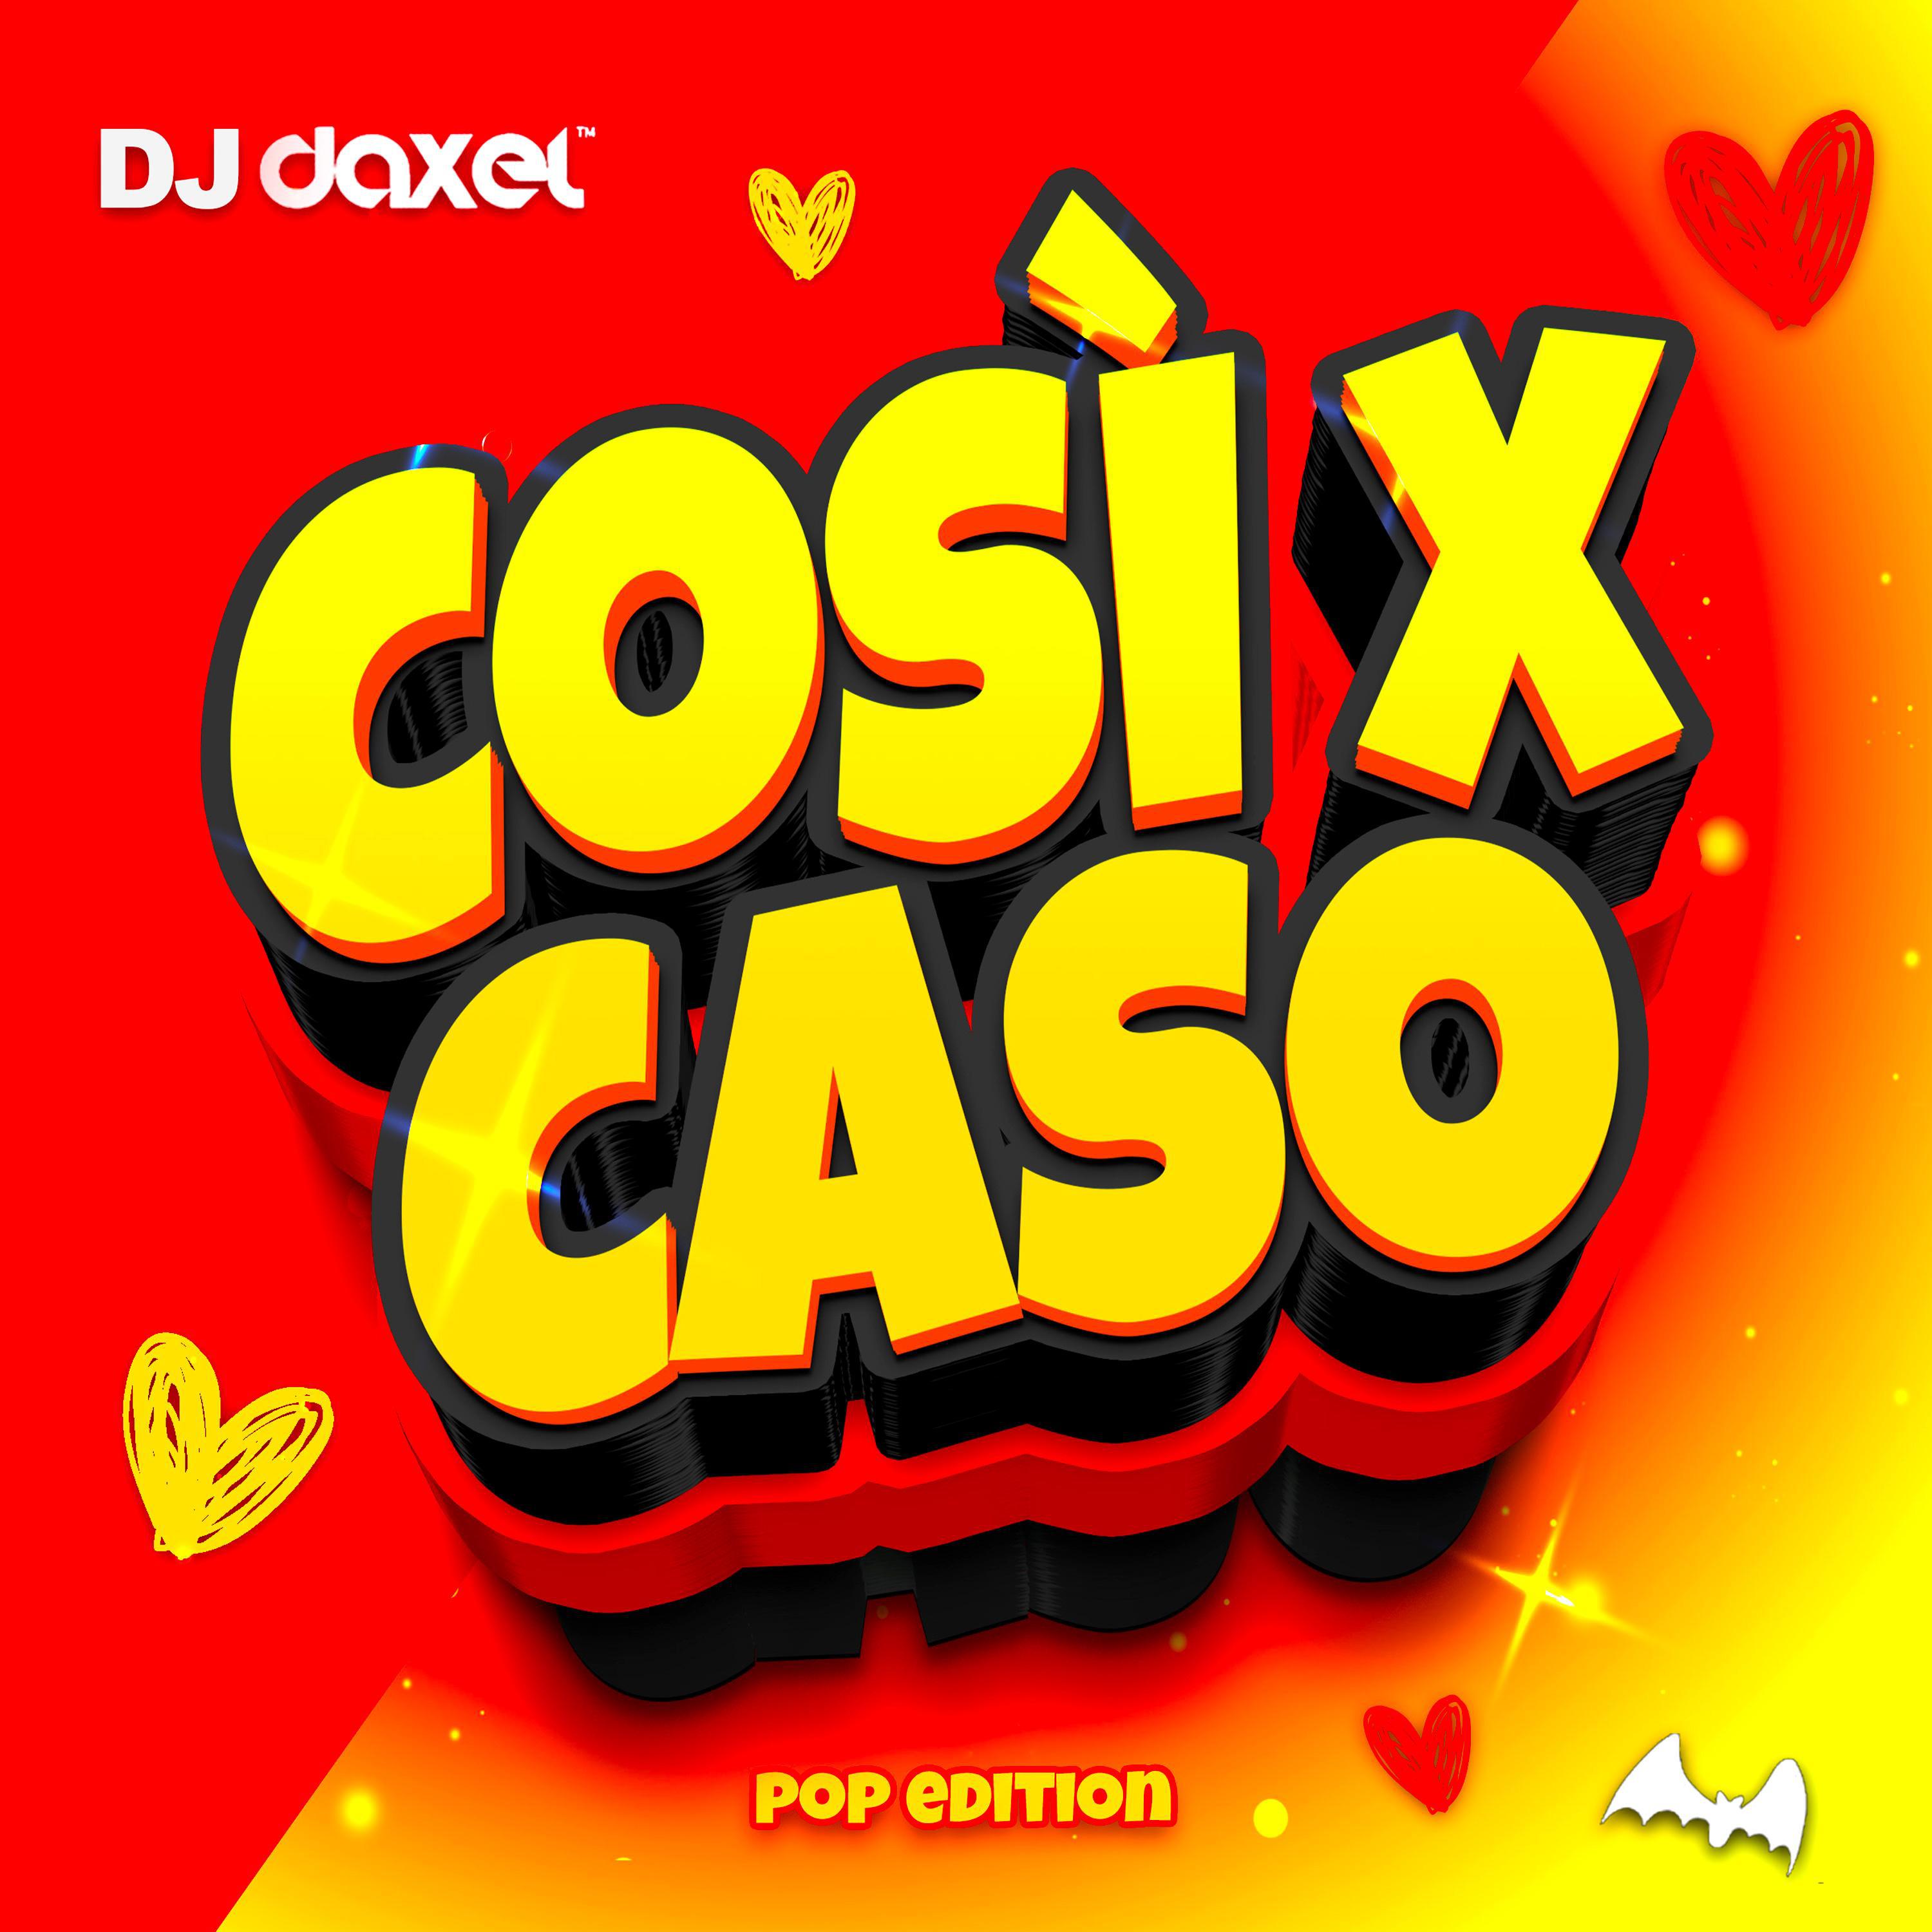 DJ Daxel - Cosi per caso